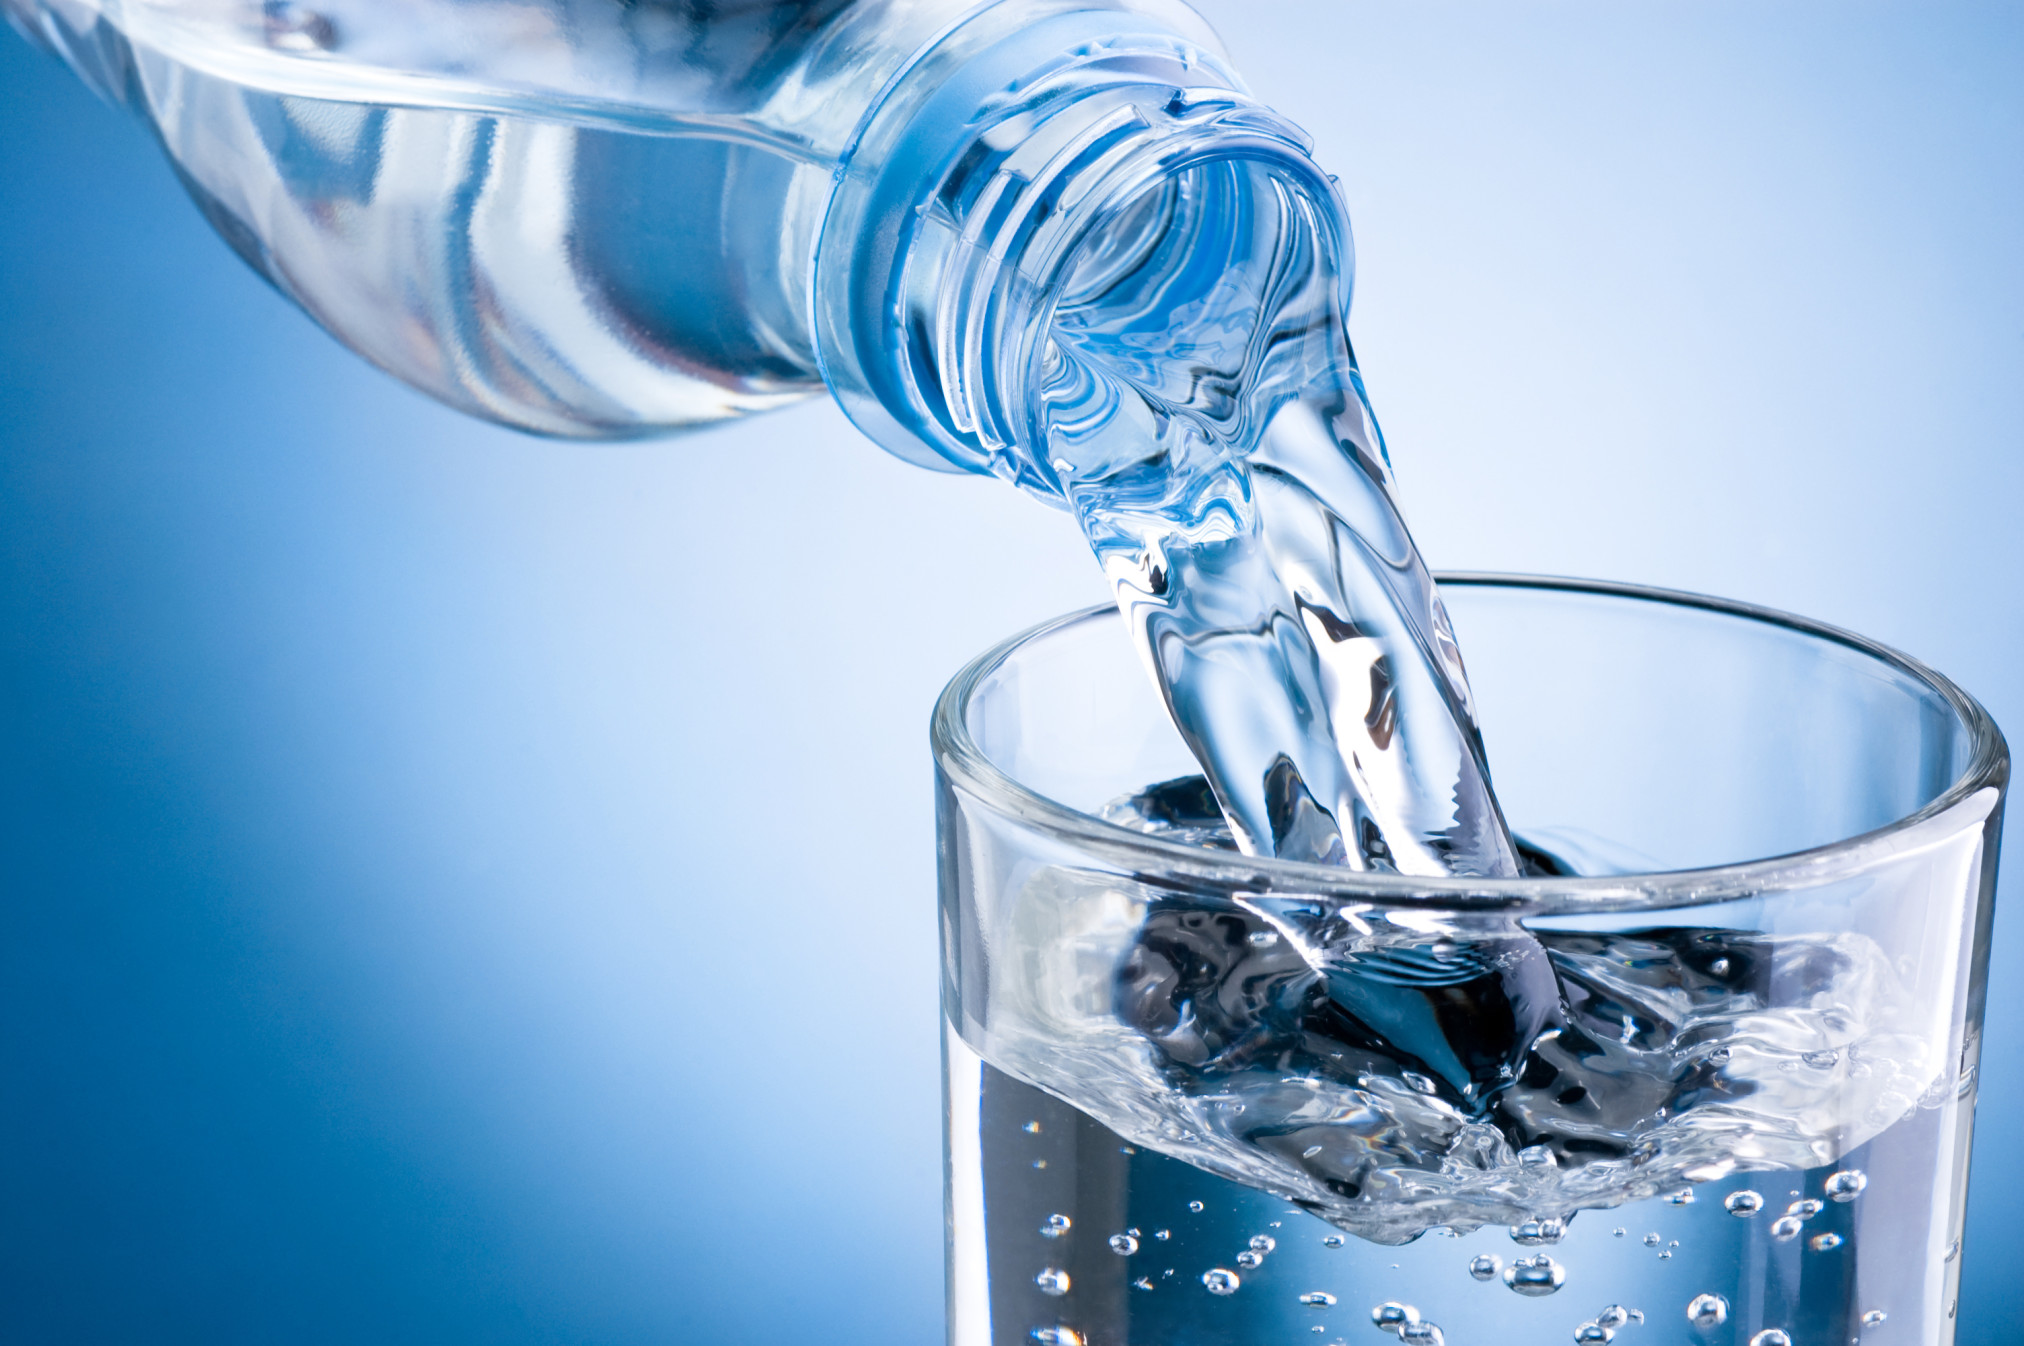 فوائد شرب الماء في رمضان لصحة جيدة 2